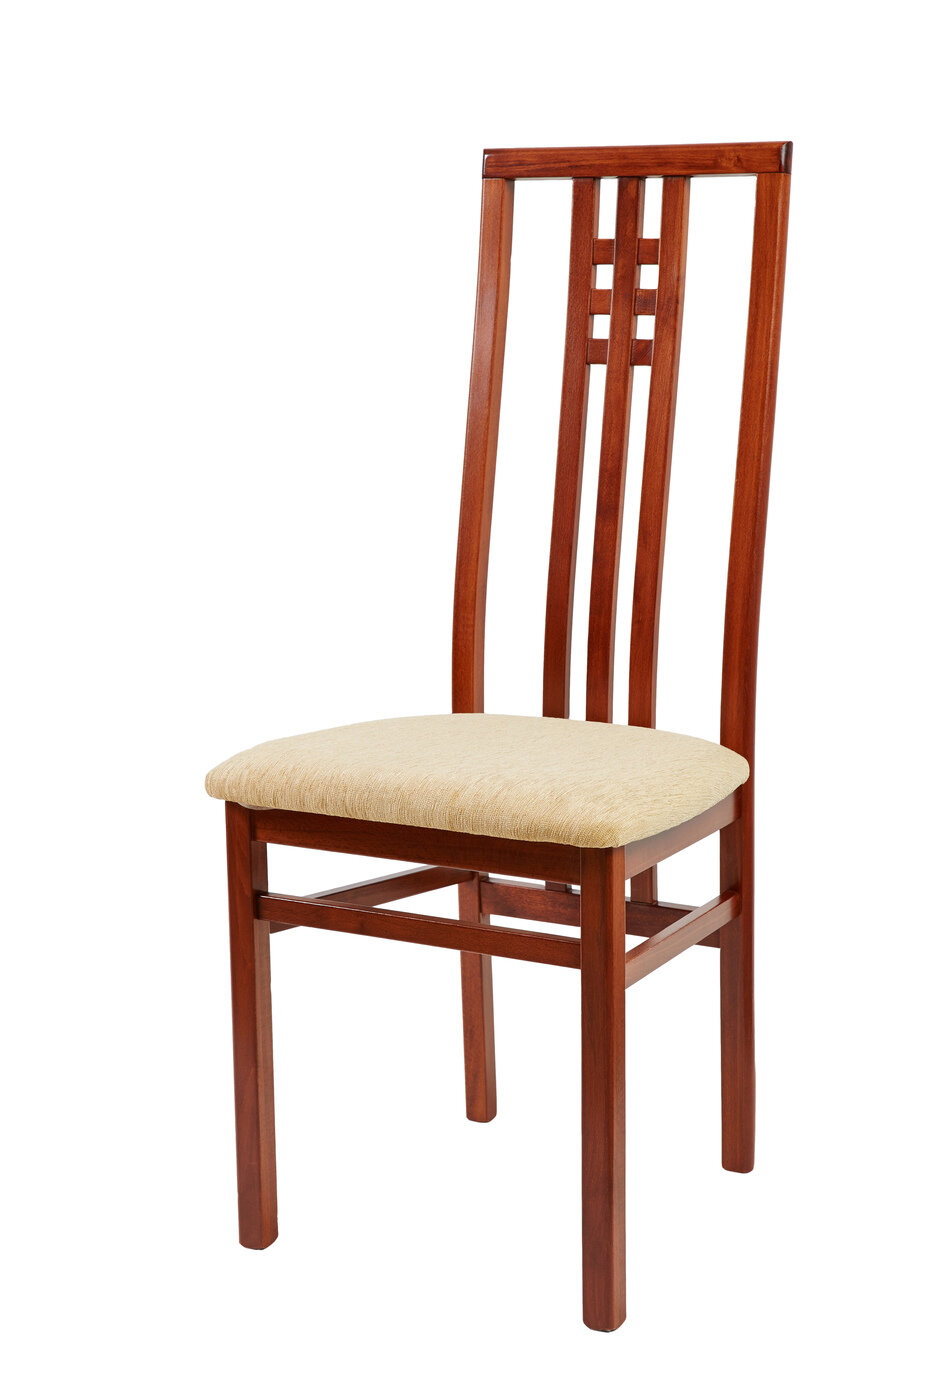 Стул Скала для кухни деревянный высокий со спинкой, с мягкой сидушкой, кухонный, стулья с мягким сиденьем, мебель минимализм, модерн